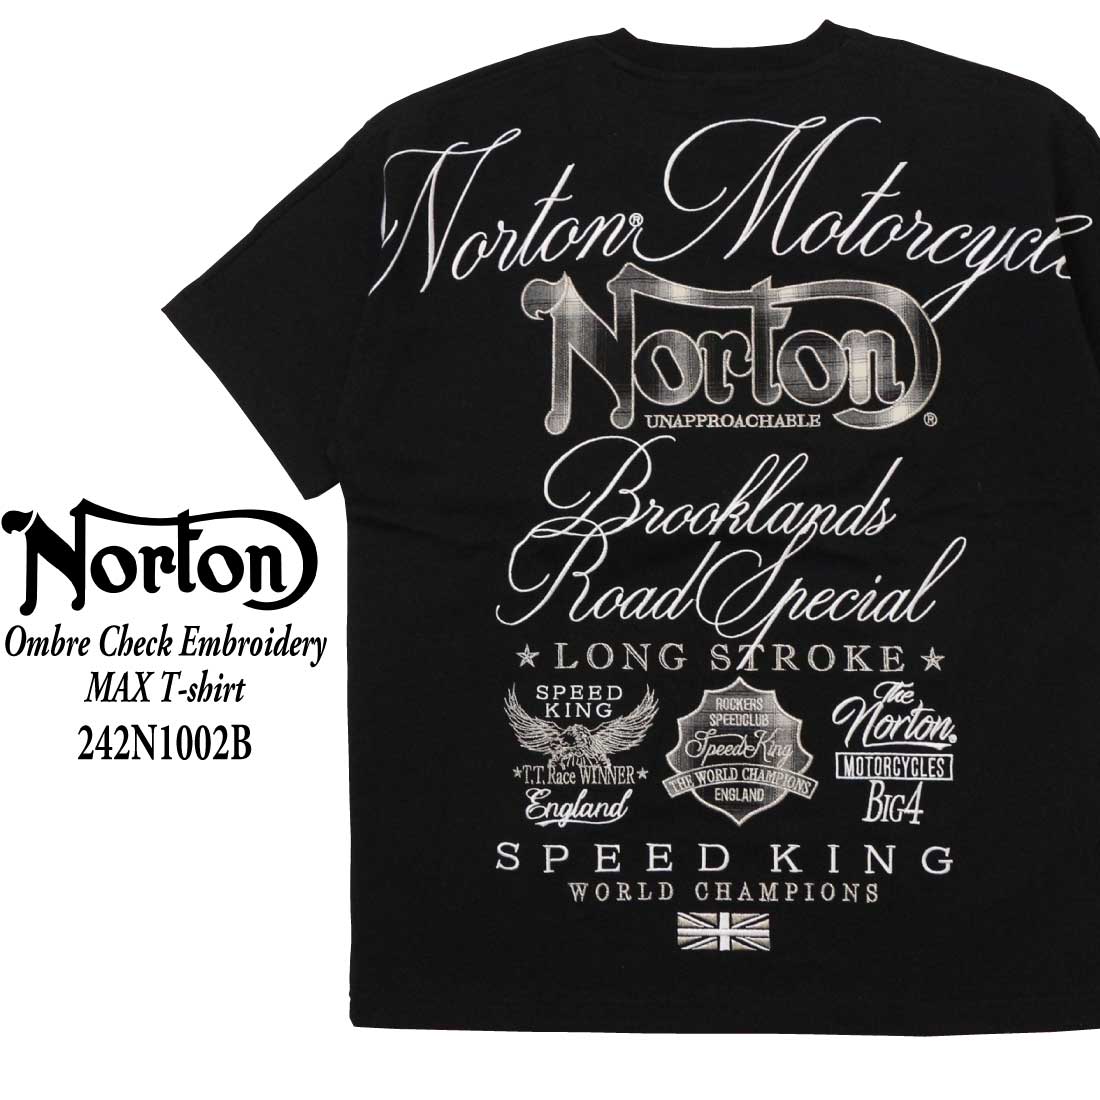 Norton 服 半袖 Tシャツ 242N1002B オンブレ−チェック使い刺繍 MAX Tシャツ ...